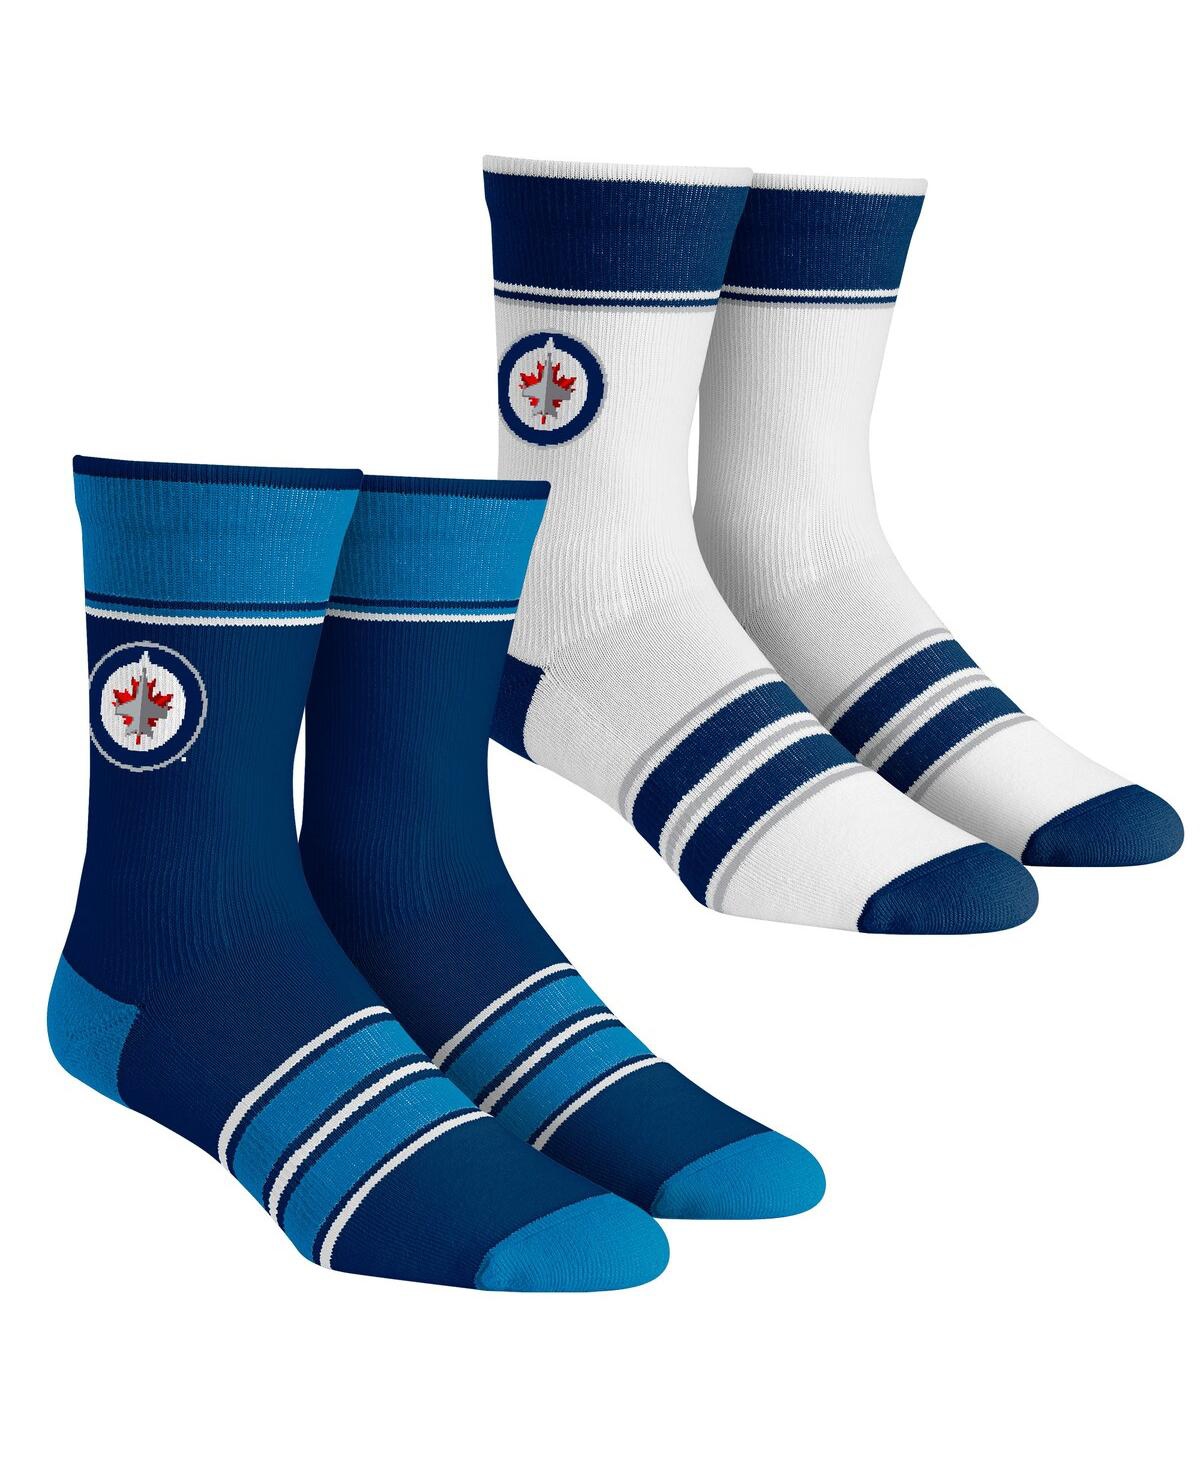 Men's and Women's Rock 'Em Socks Winnipeg Jets Multi-Stripe 2-Pack Team Crew Sock Set - Blue, White